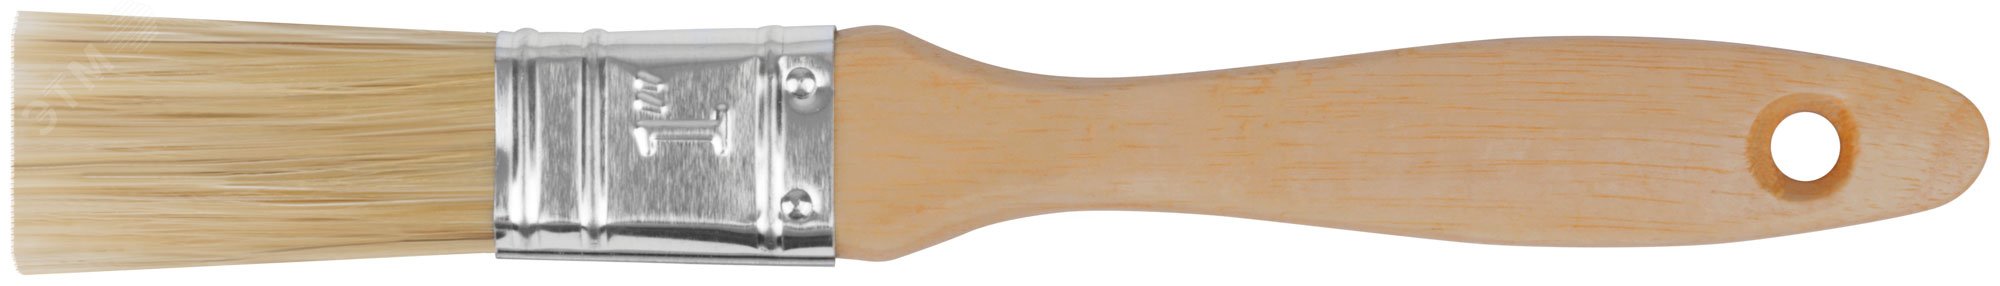 Кисть флейцевая ''Профи'', натур.светлая щетина, деревянная ручка 1'' (25 мм) 1113 FIT - превью